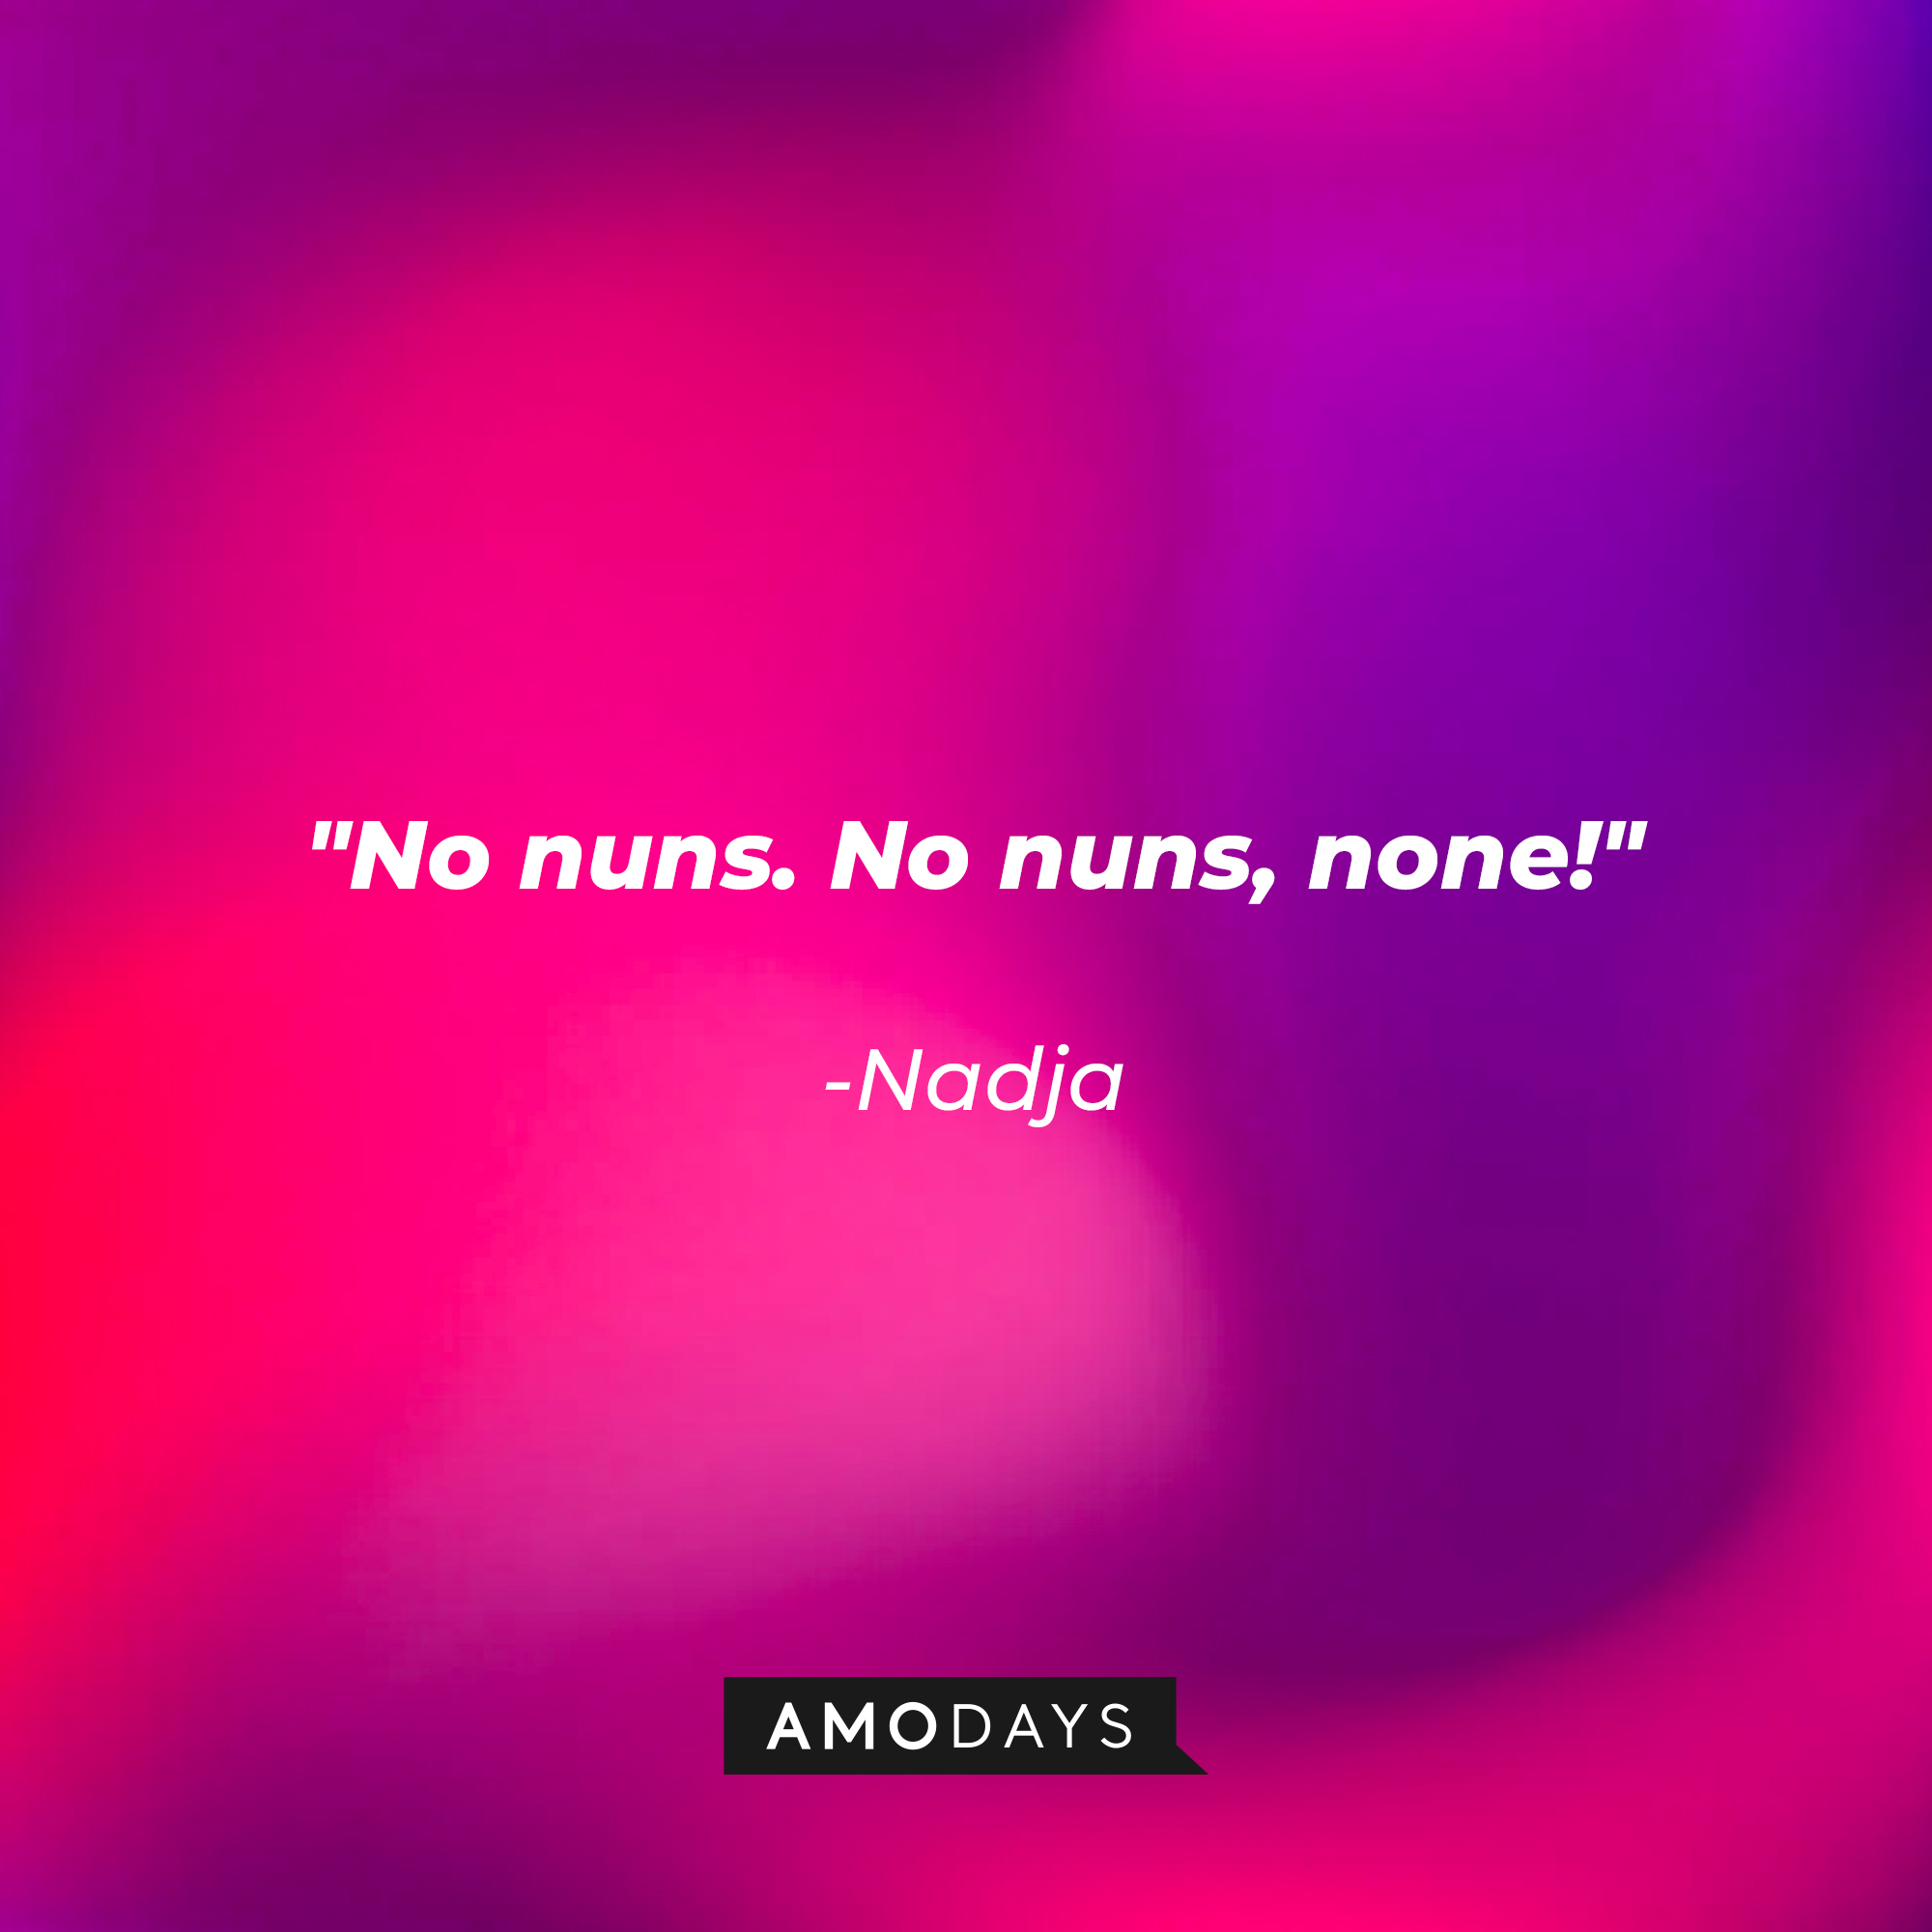 Nadja’s quote: "No nuns. No nuns, none!" | Source: Amodays